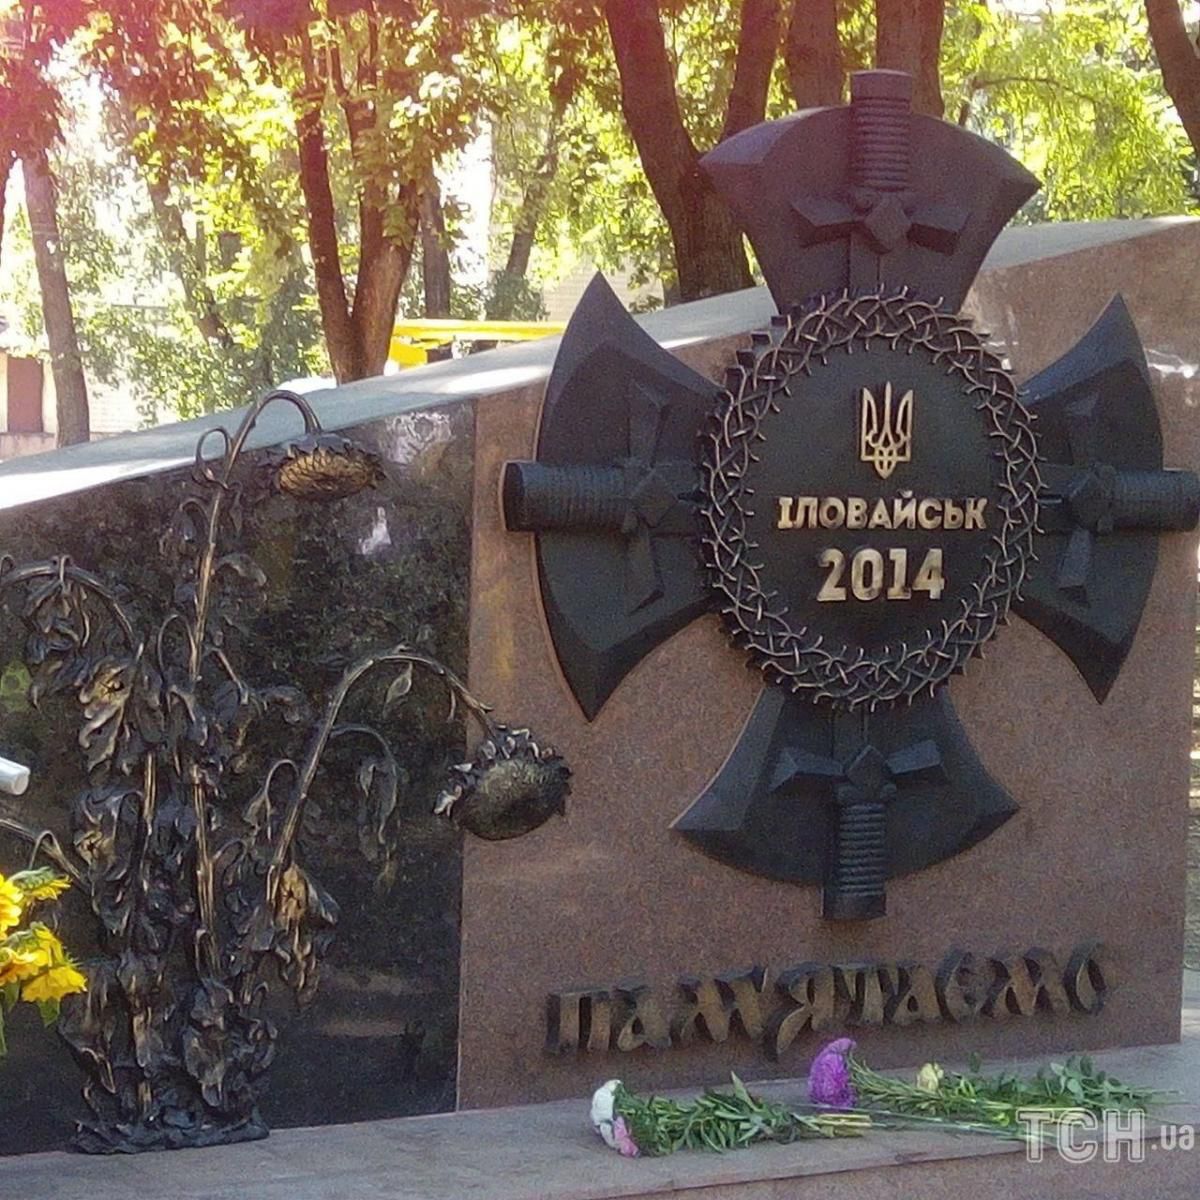 Tragedia de Ilovaysk. La memoria de los que cayeron en combate fue honrada en Ucrania